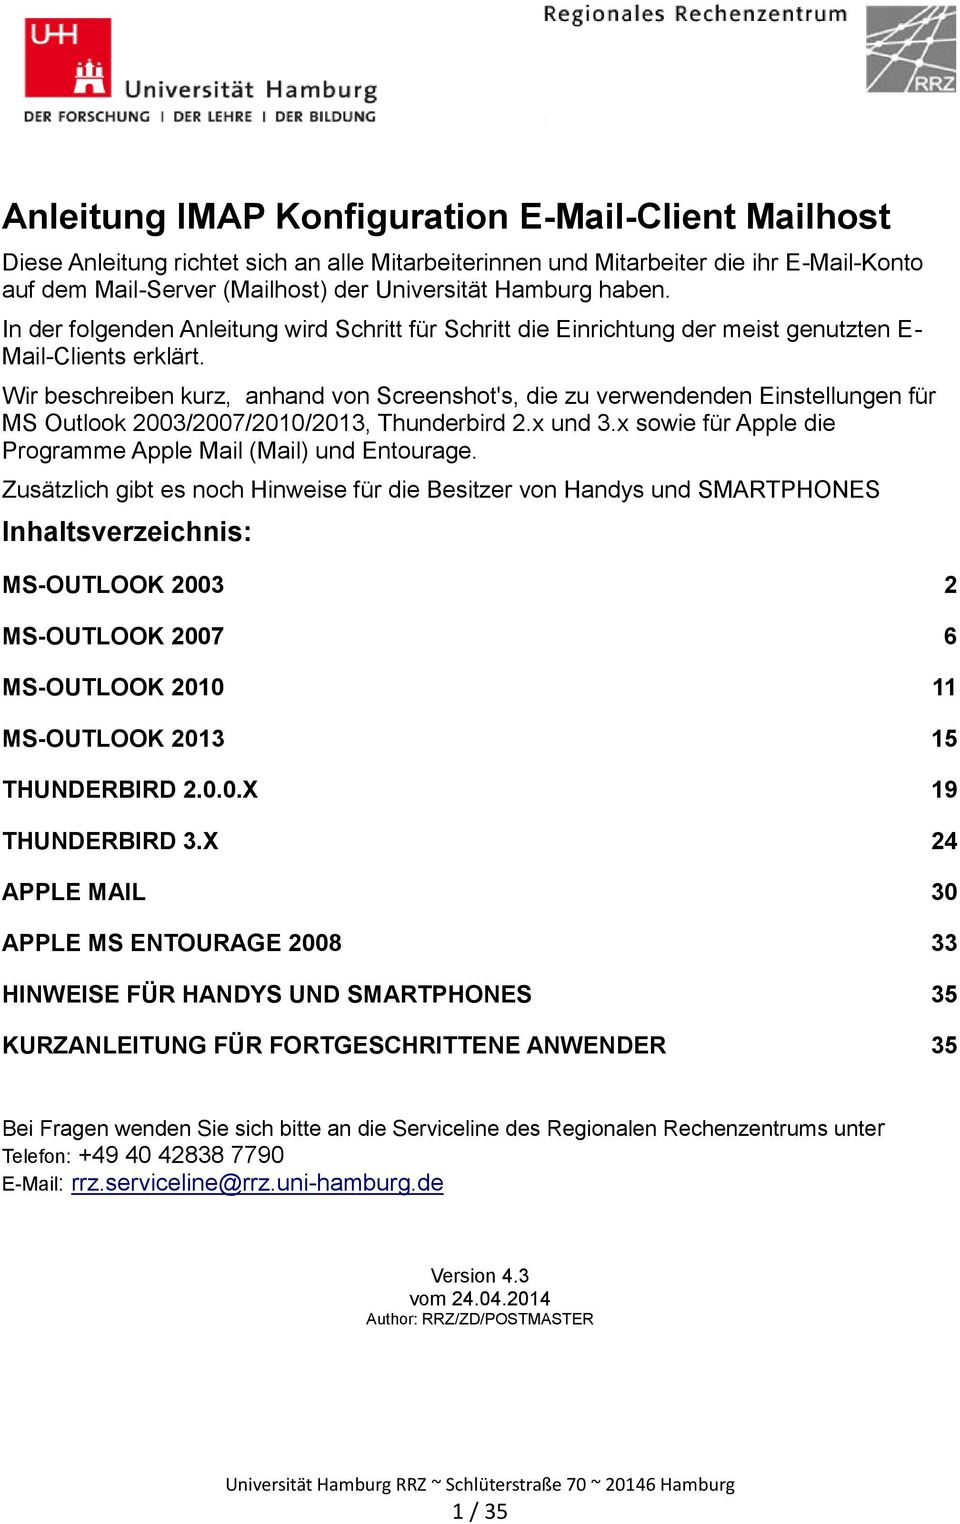 Wir beschreiben kurz, anhand von Screenshot's, die zu verwendenden Einstellungen für MS Outlook 2003/2007/2010/2013, Thunderbird 2.x und 3.